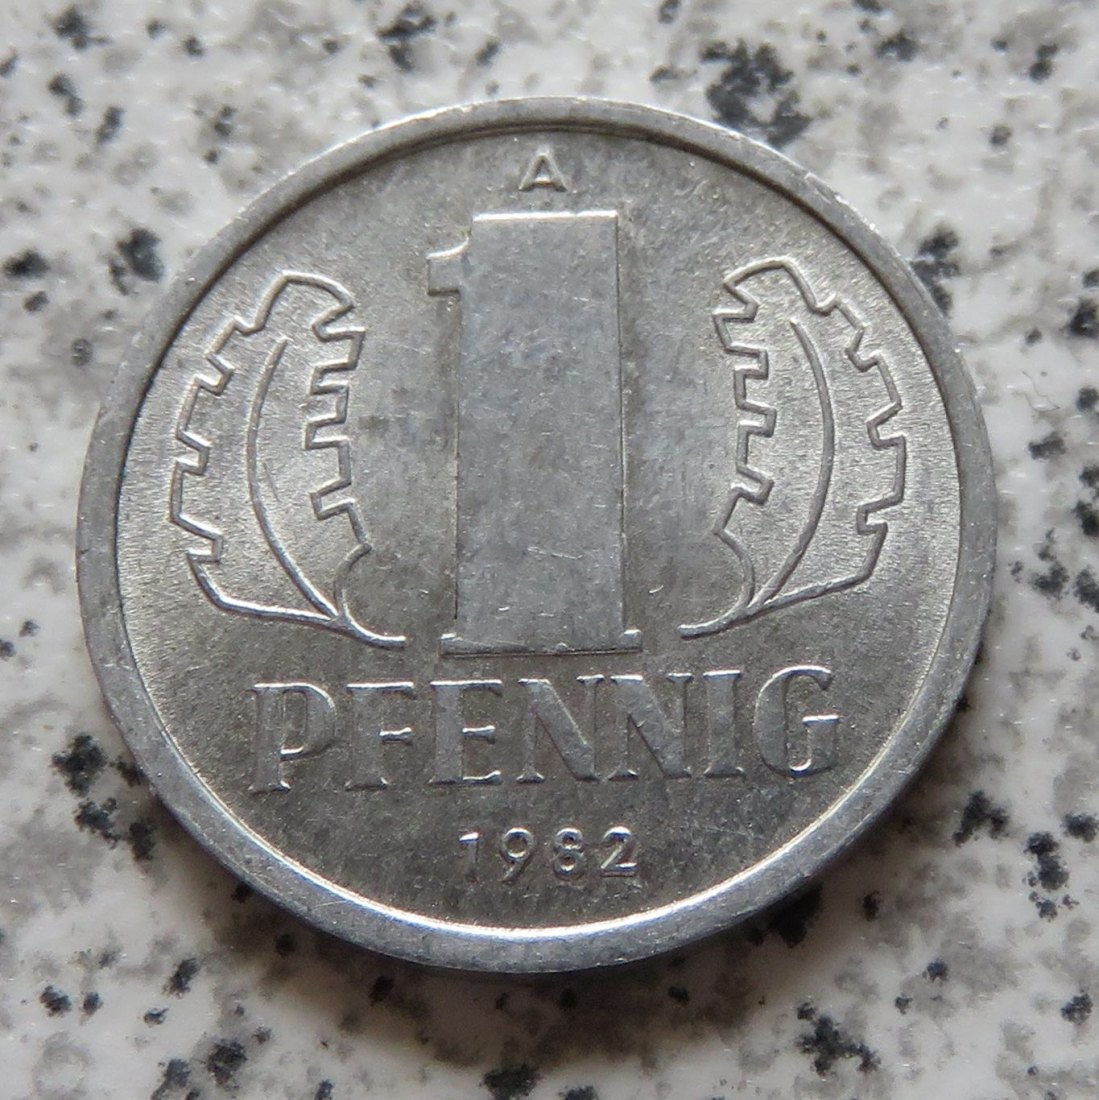  DDR 1 Pfennig 1982, Erhaltung   